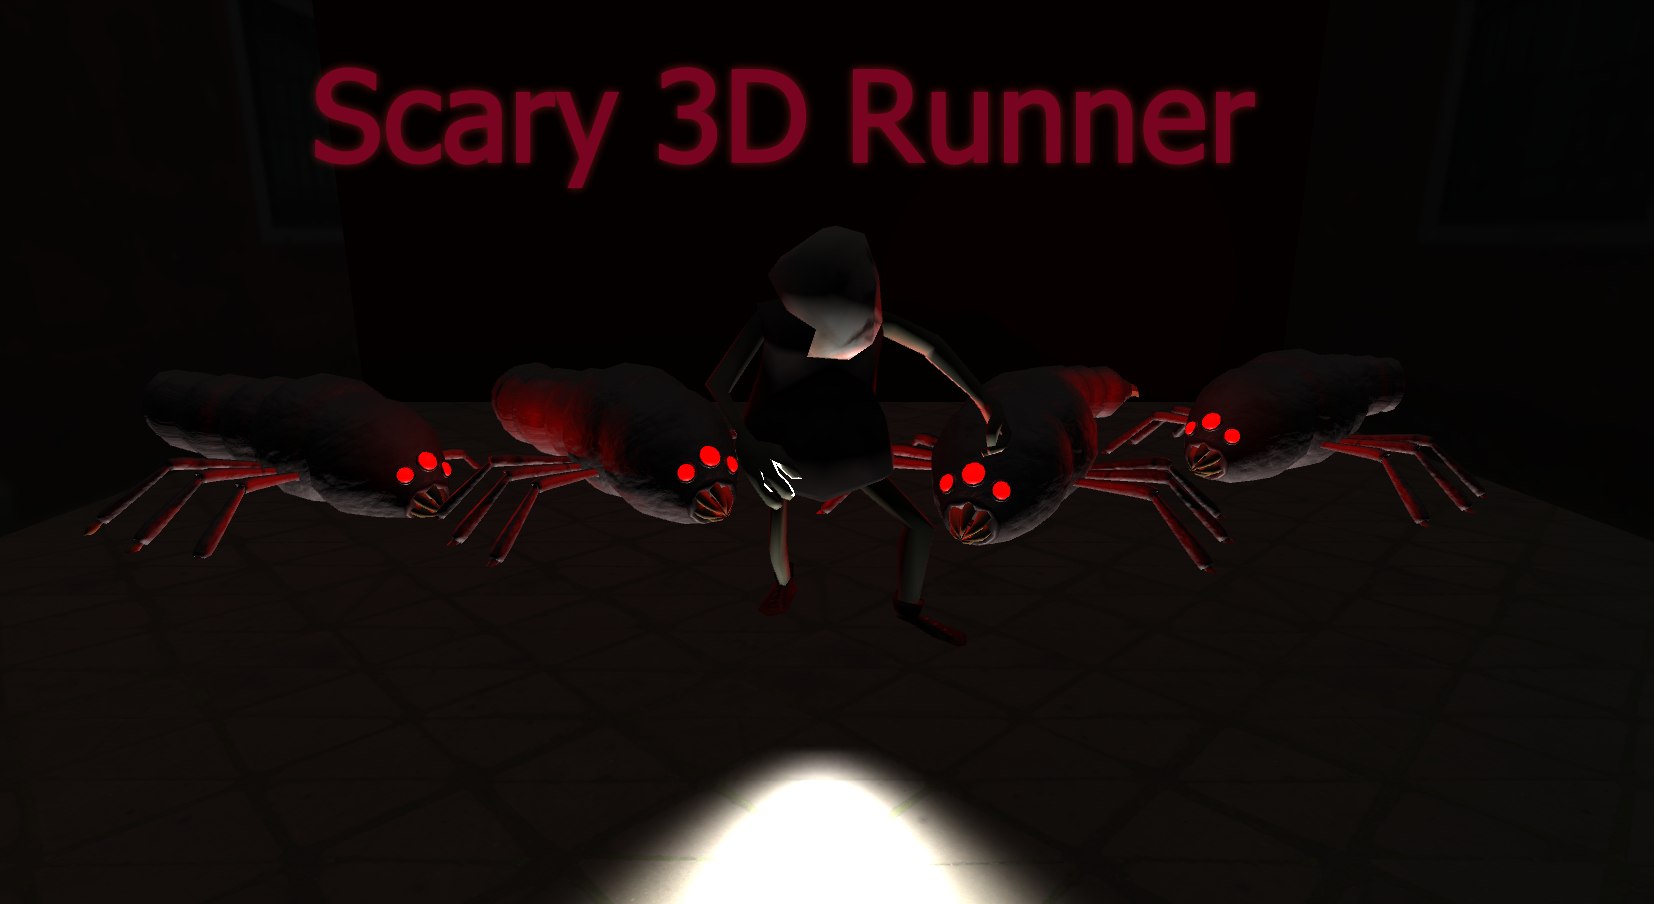 Scary 3D Runner